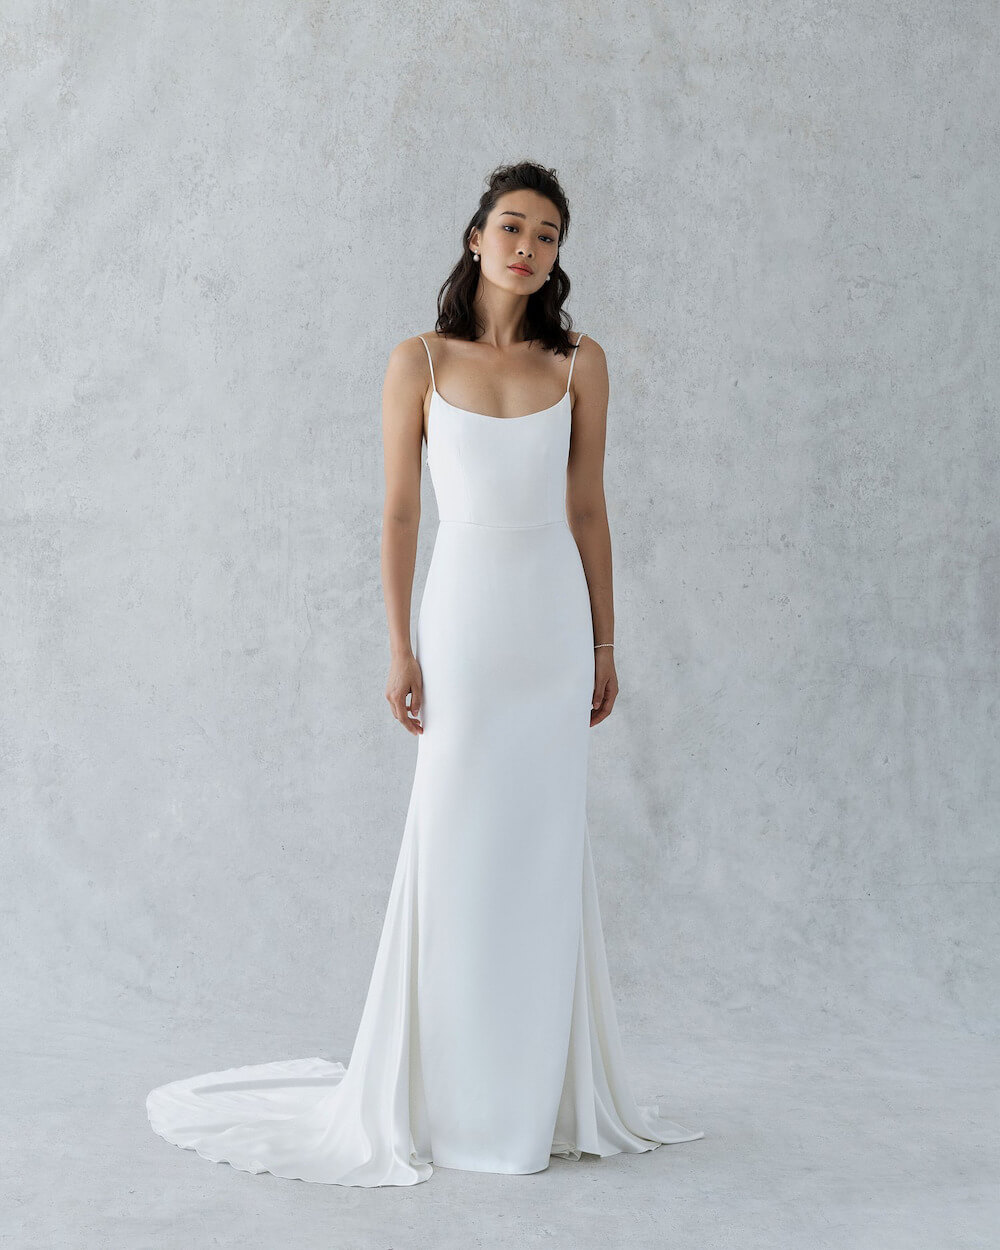 Váy cưới thiết kế tối giản đang ngày càng được ưa chuộng